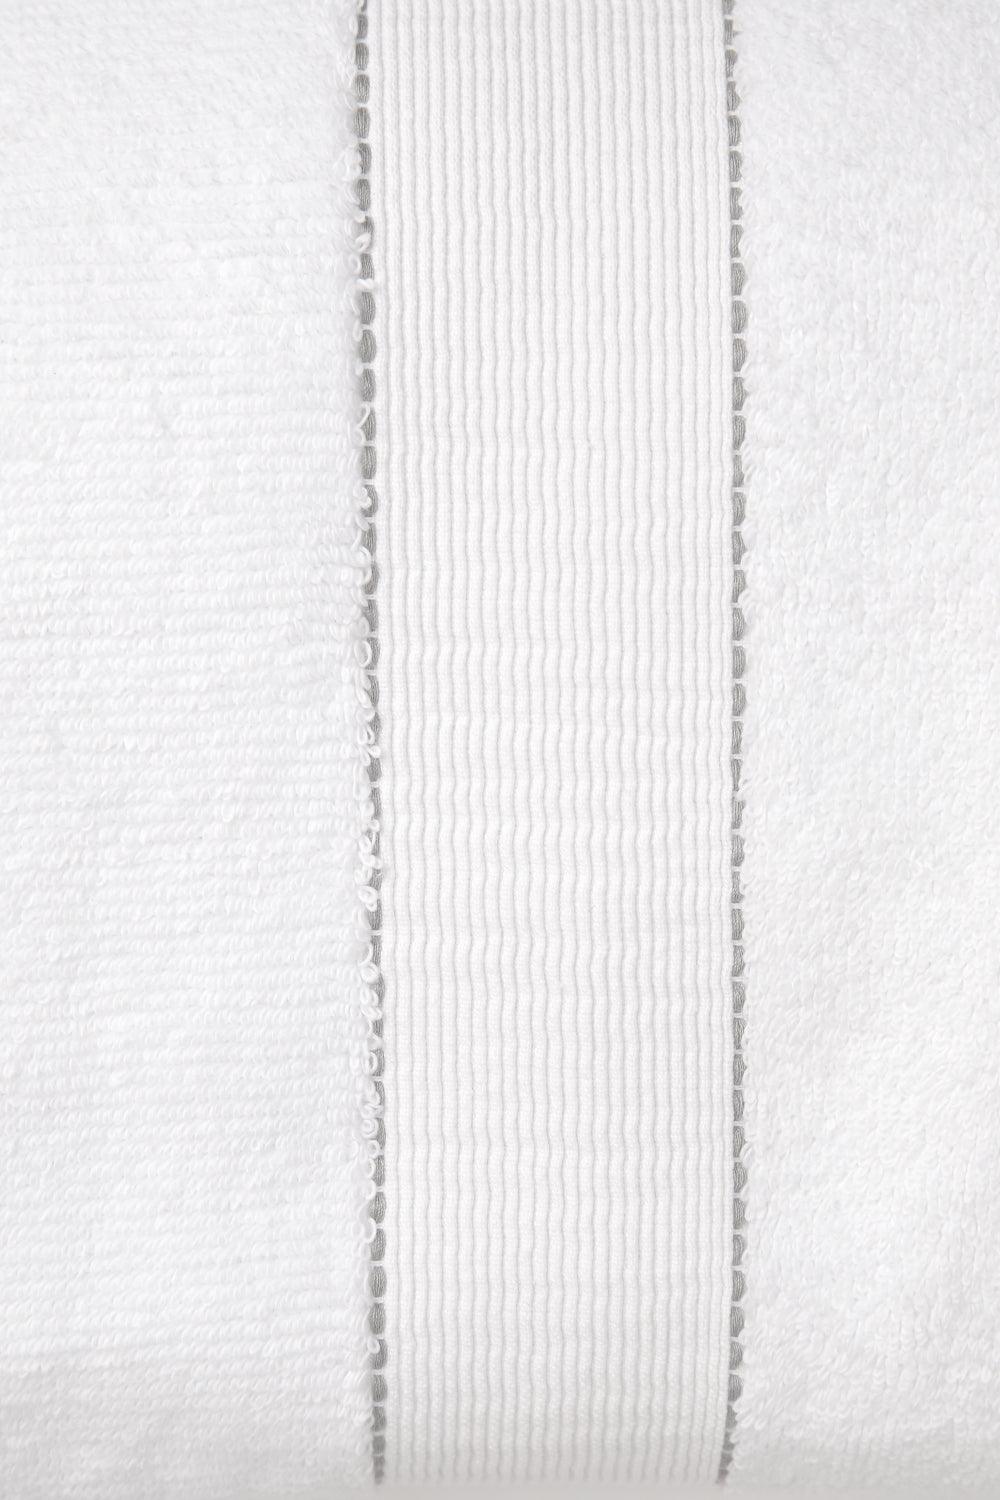 KENNETH COLE - מגבת פנים פרימיום בצבע לבן - MASHBIR//365